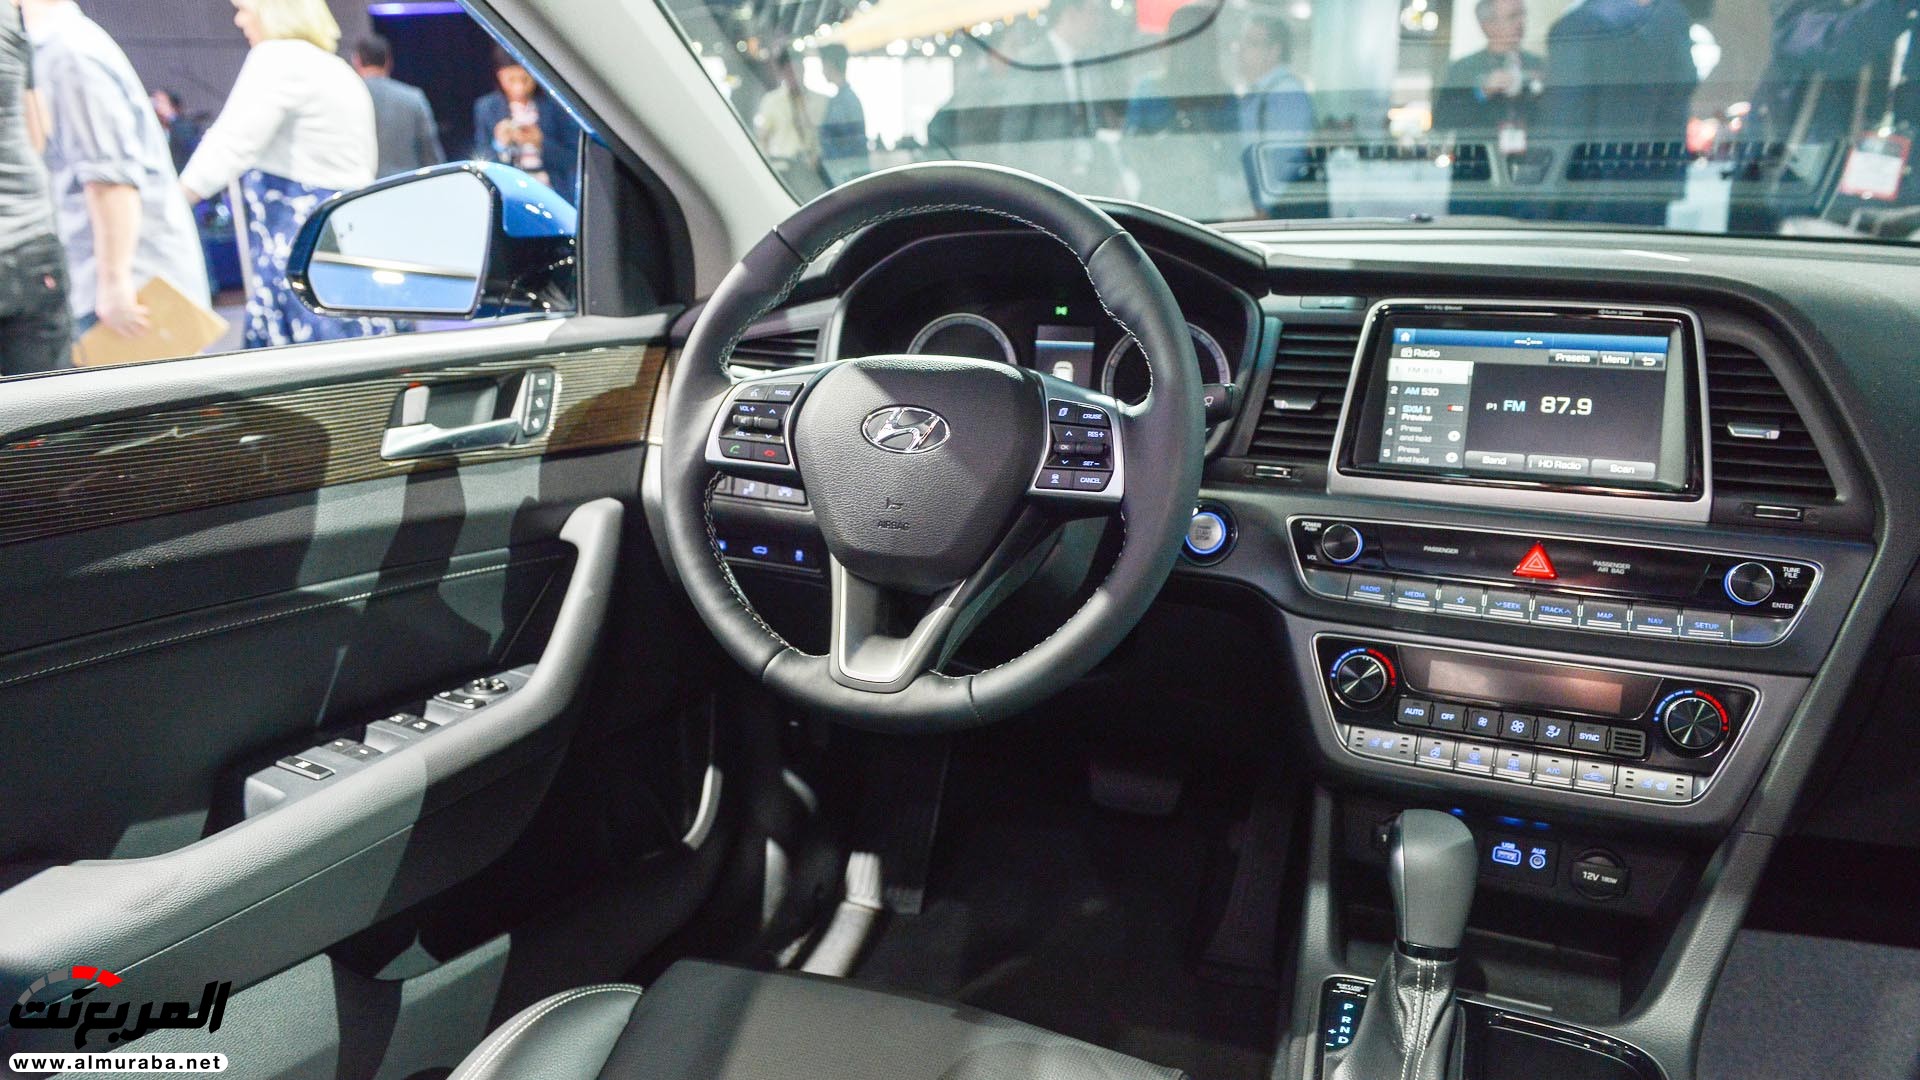 هيونداي سوناتا 2018 المحدثة تحصل على تحديثات خارجية وداخلية "صور وفيديو واسعار" Hyundai Sonata 66